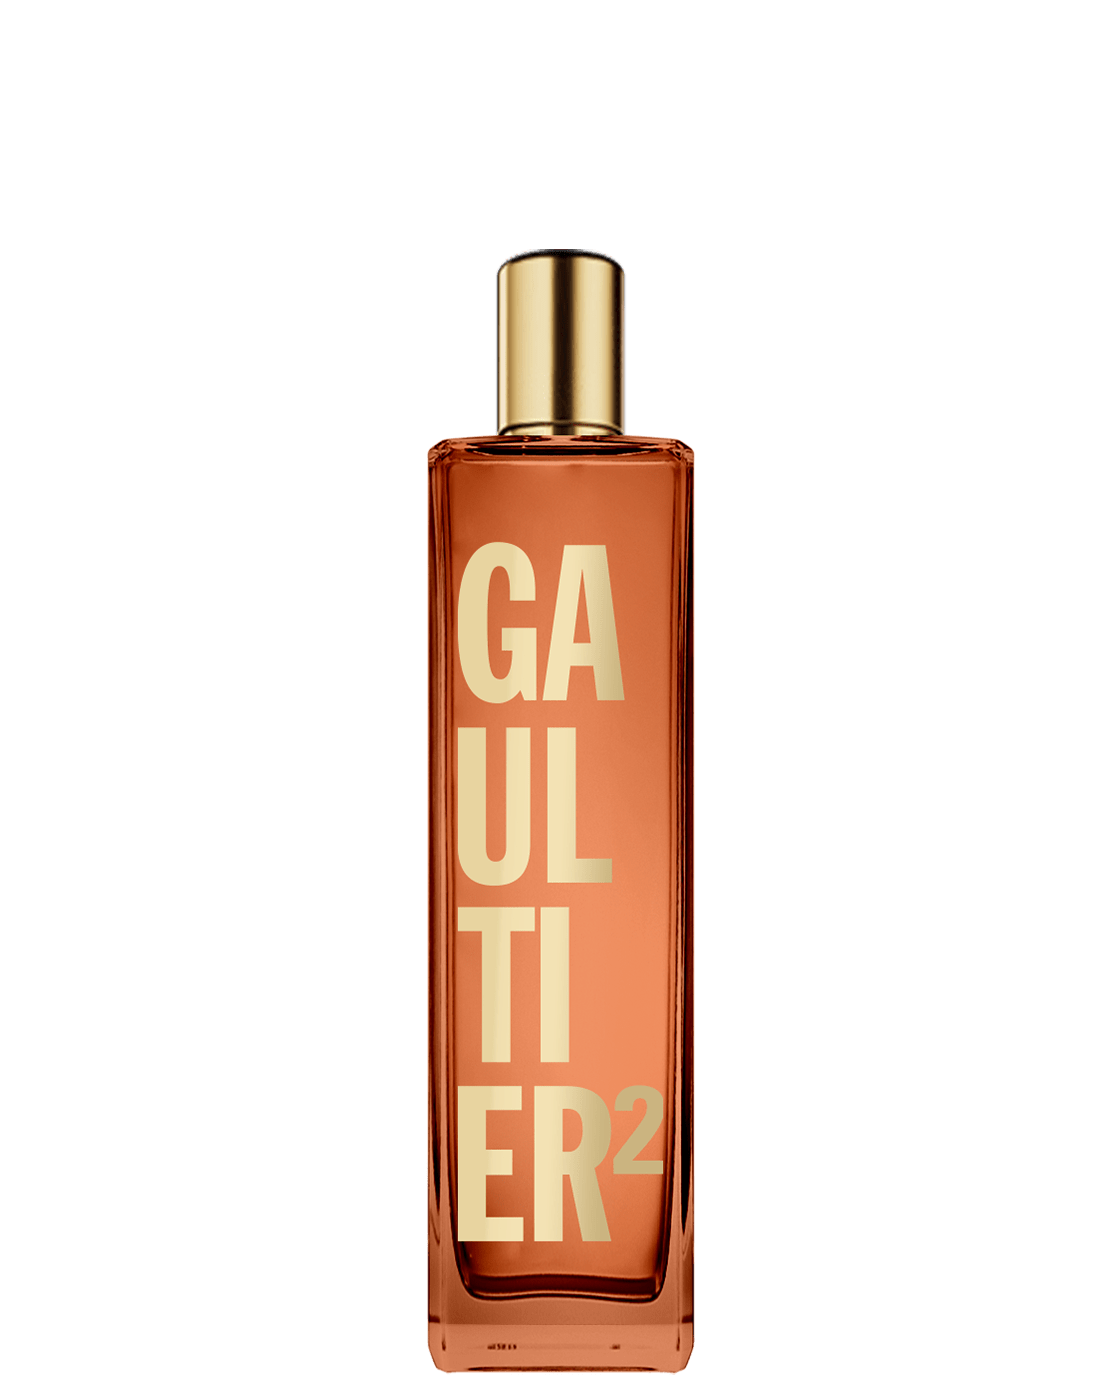 Gaultier²